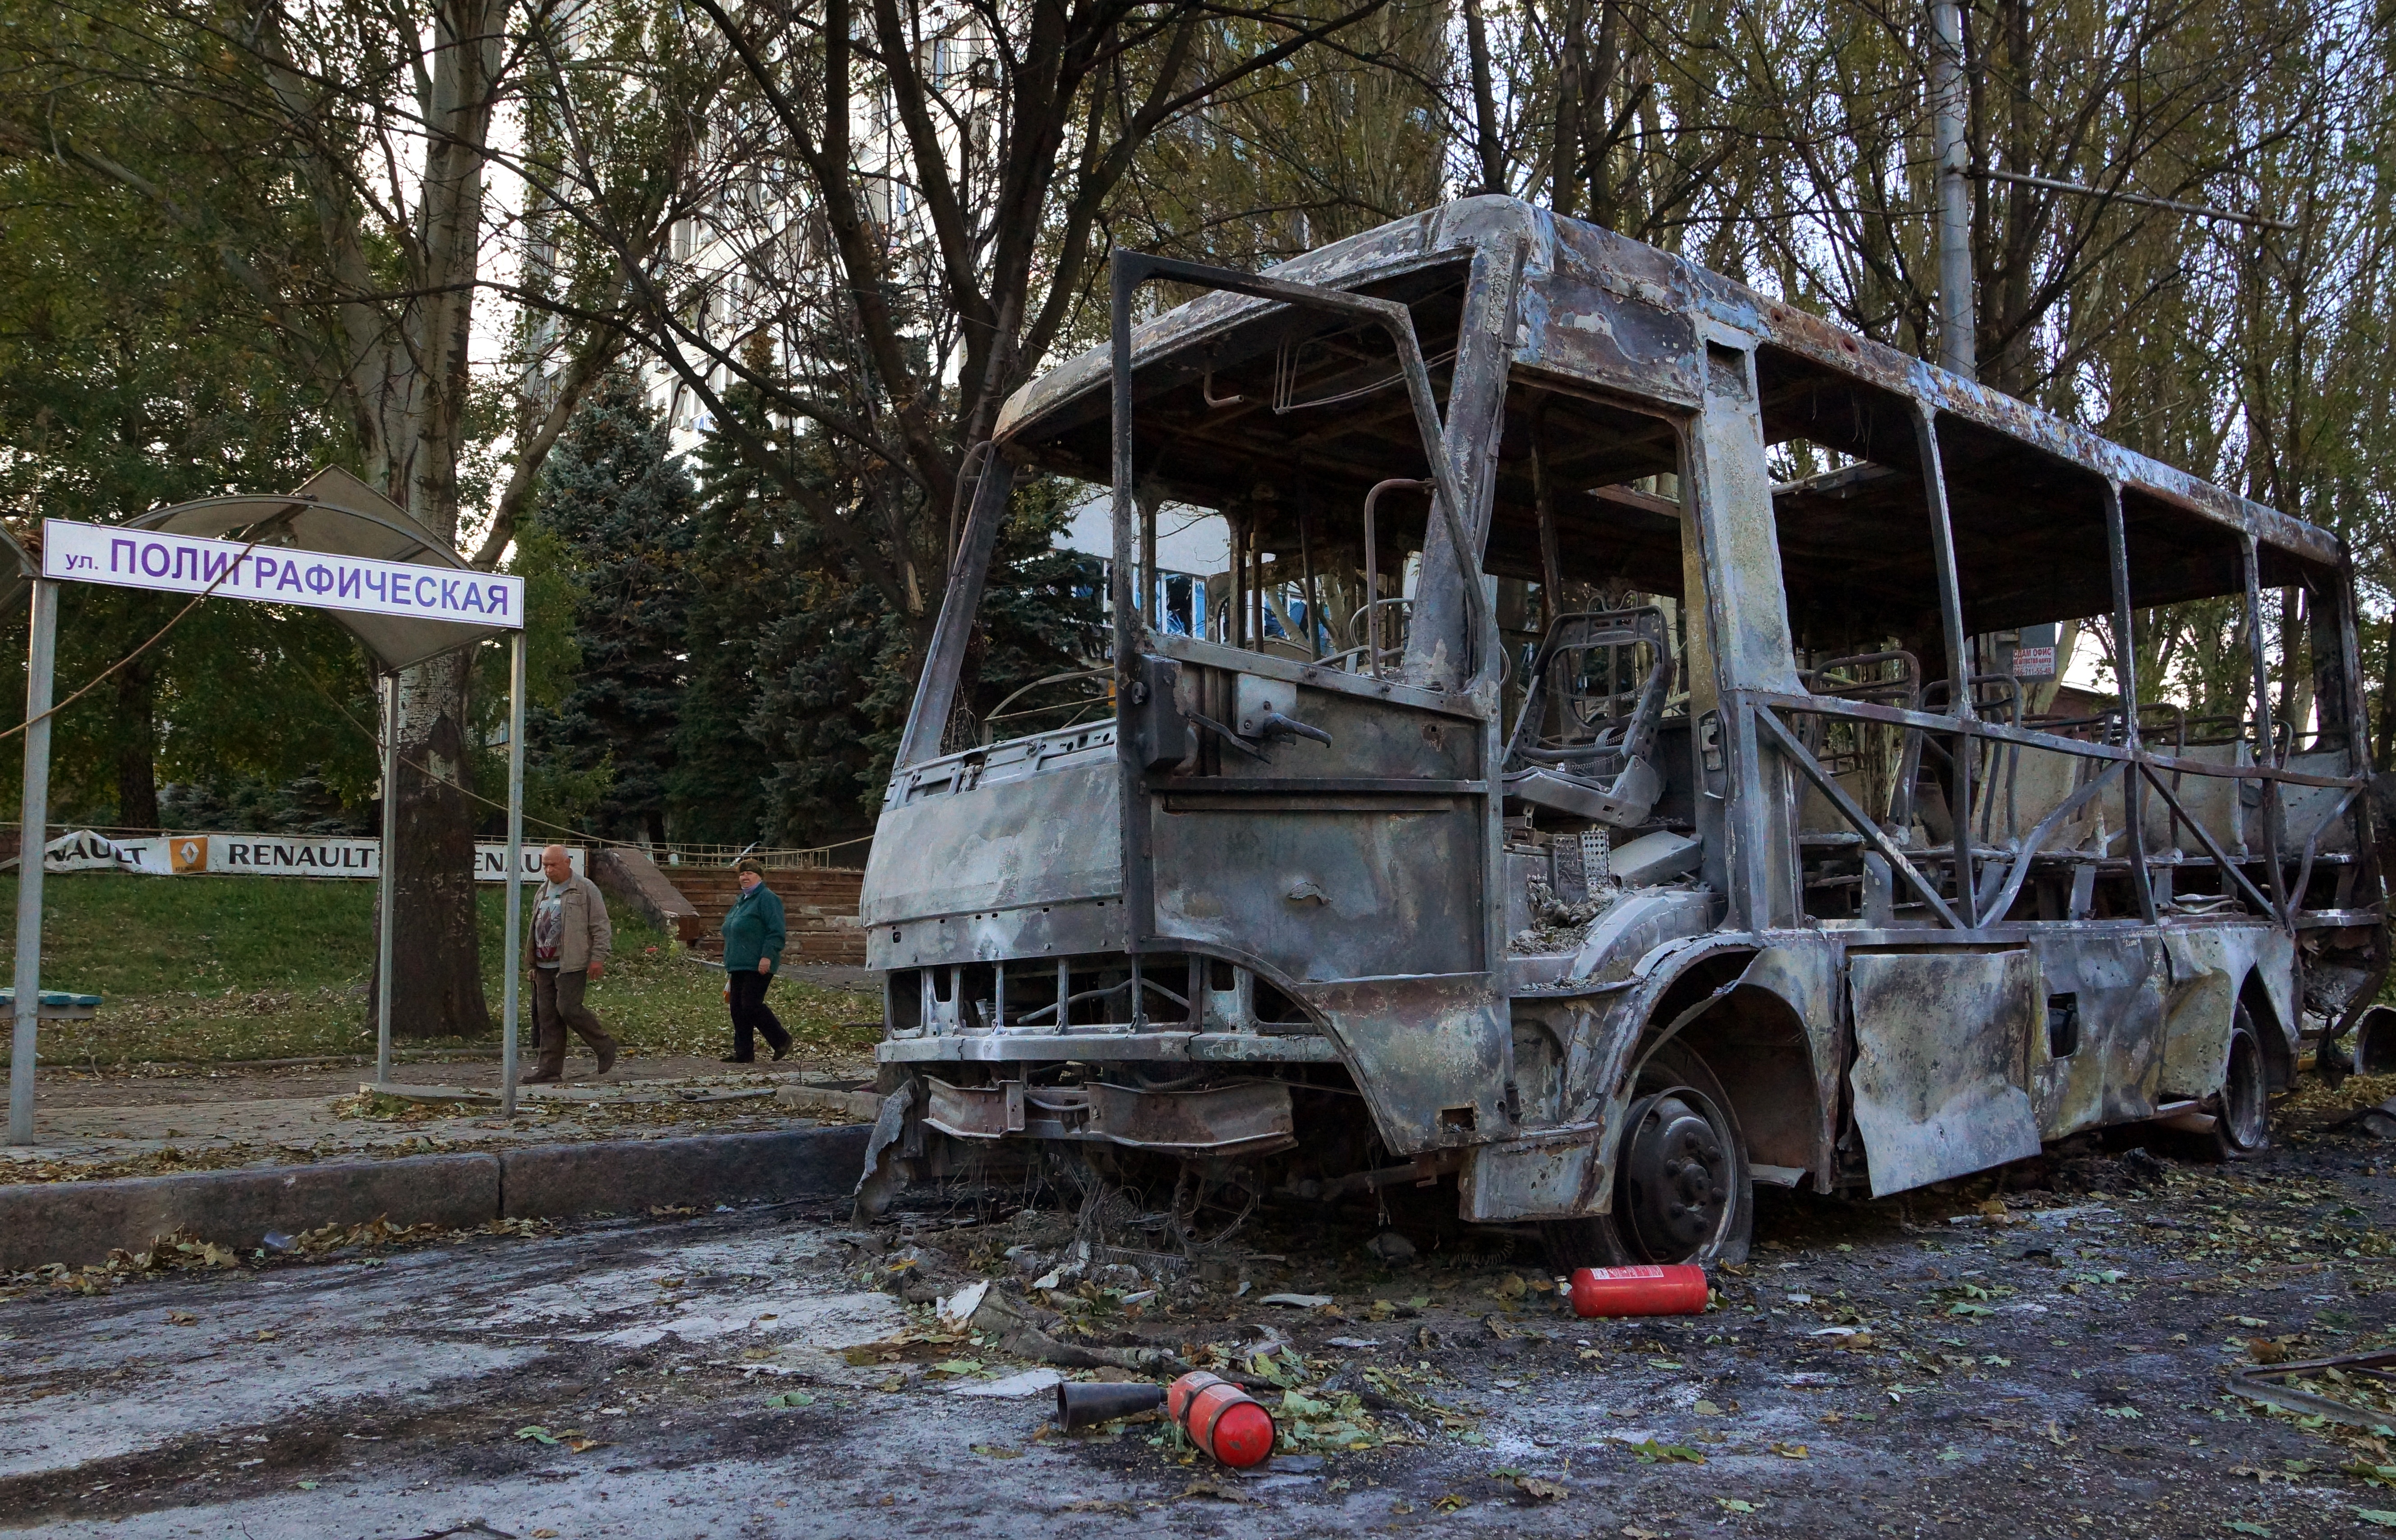 ООН назвала "очень сдержанные" свои оценки жертвы в Донбассе